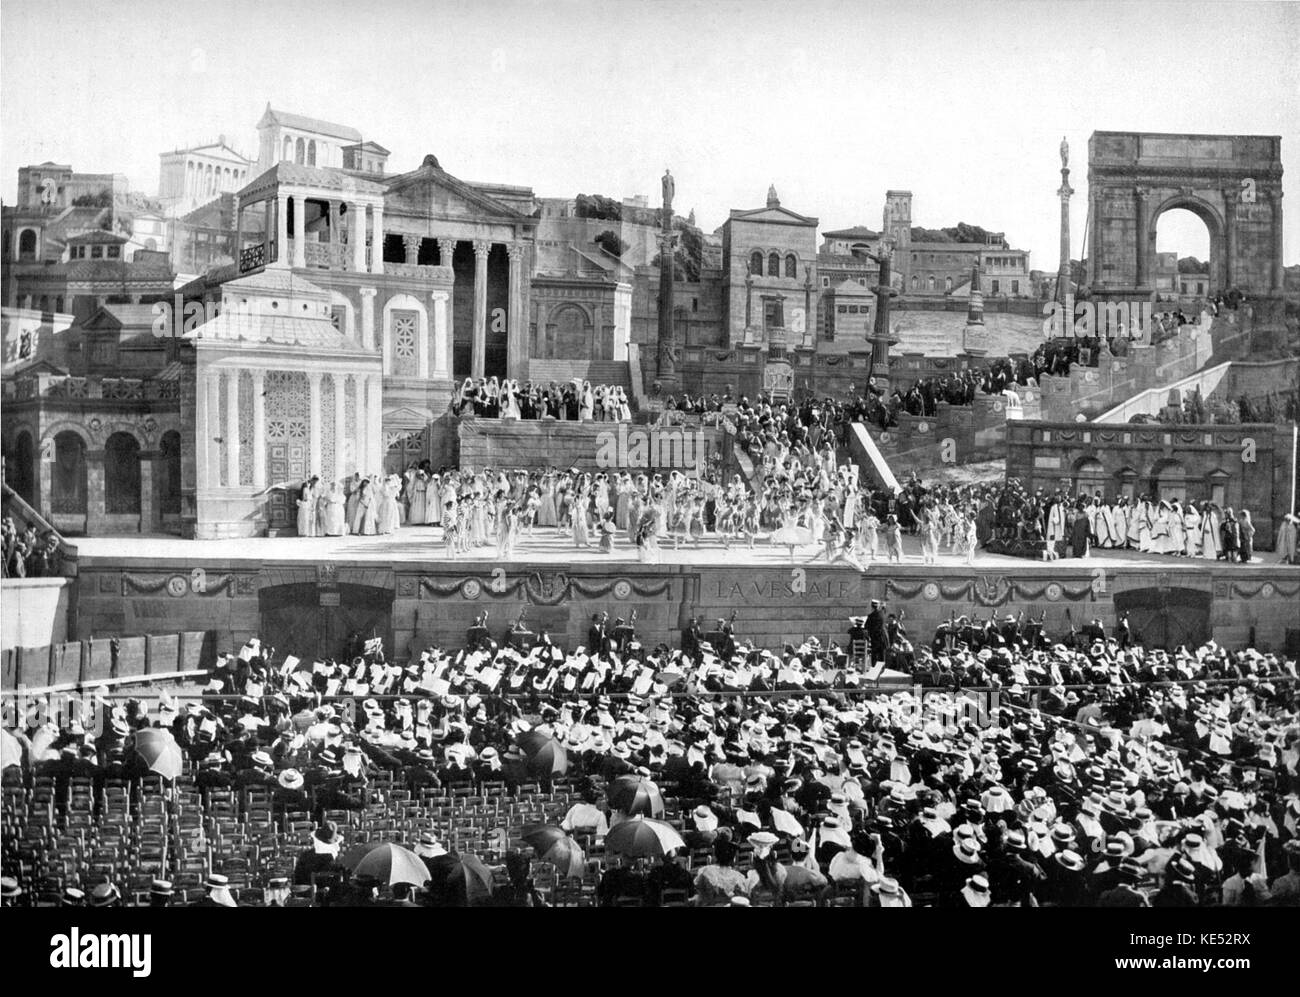 La Vestale erfolgt bei Beziers Amphitheater 1906 Act I. Oper von Gaspare Spontini zu einem französischen Libretto von Etienne de Jouy. Die italienische Oper Komponist, 14. November 1774 - 24. Januar 1851. Stockfoto